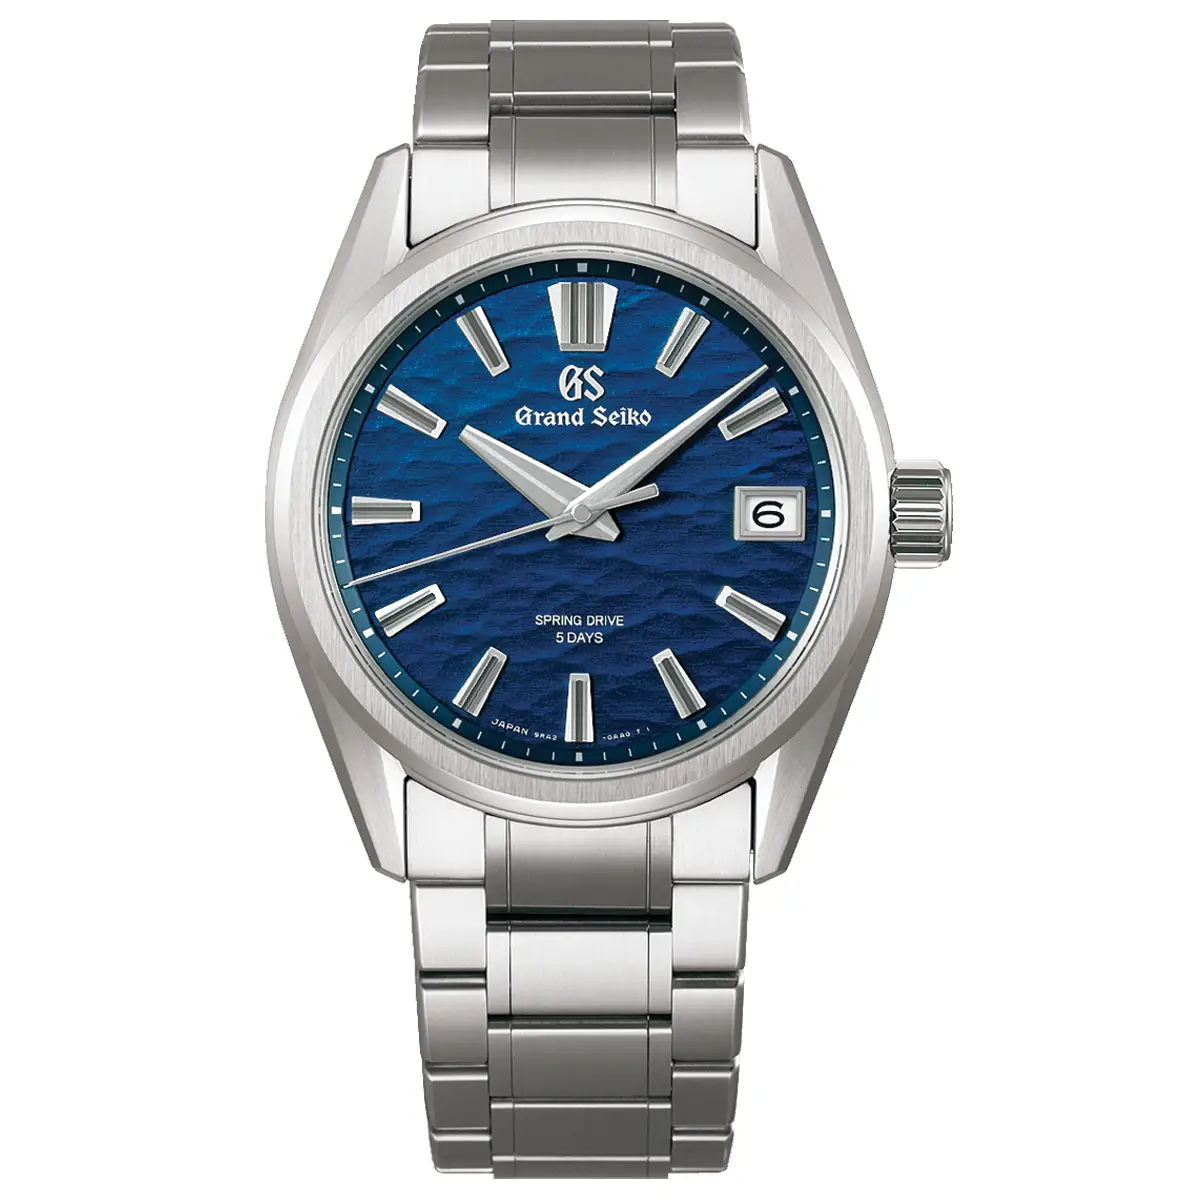 Đồng hồ Grand Seiko Evolution 9 Collection SLGA019 mặt số màu xanh. Dây đeo bằng titanium. Thân vỏ bằng titanium.